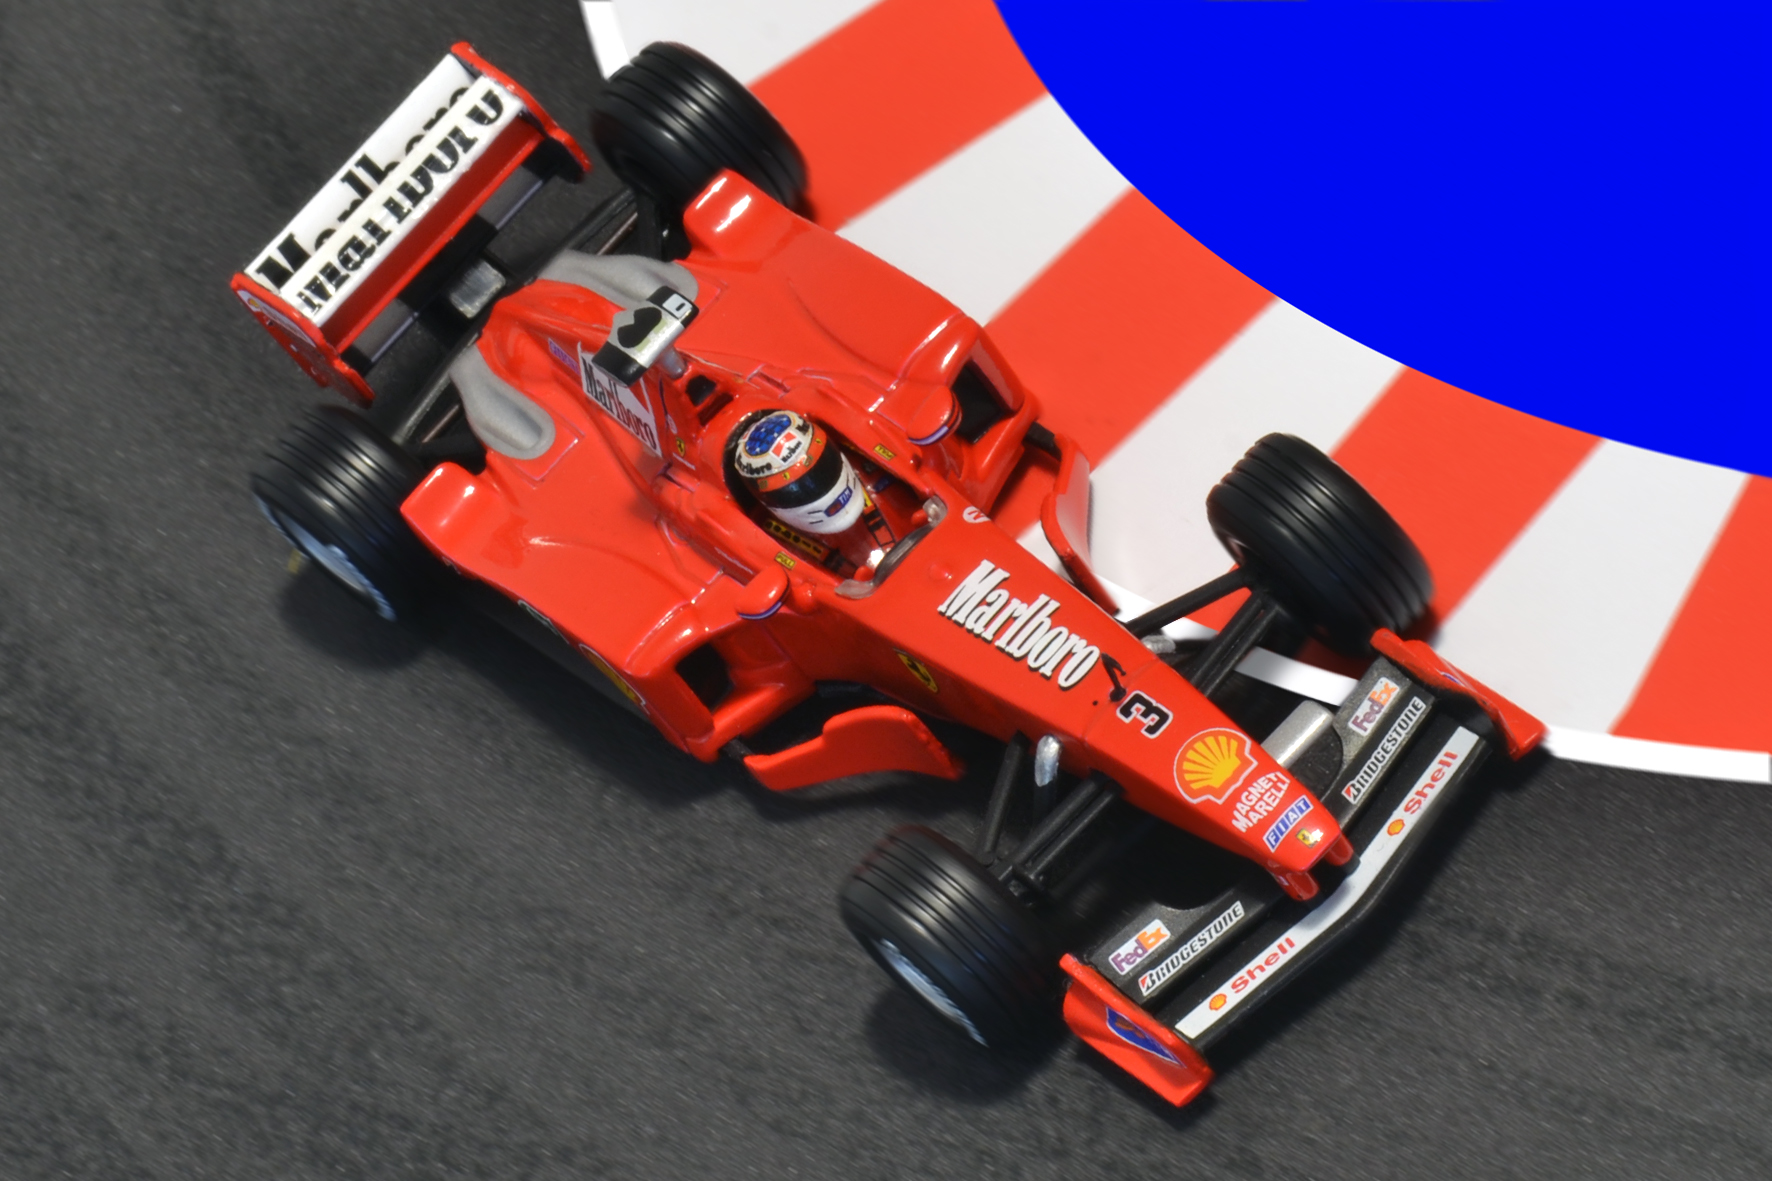 Év:1999<br />Modell: F399<br />Pilóta: Michael Schumacher<br />Gyártó: Hot Wheels